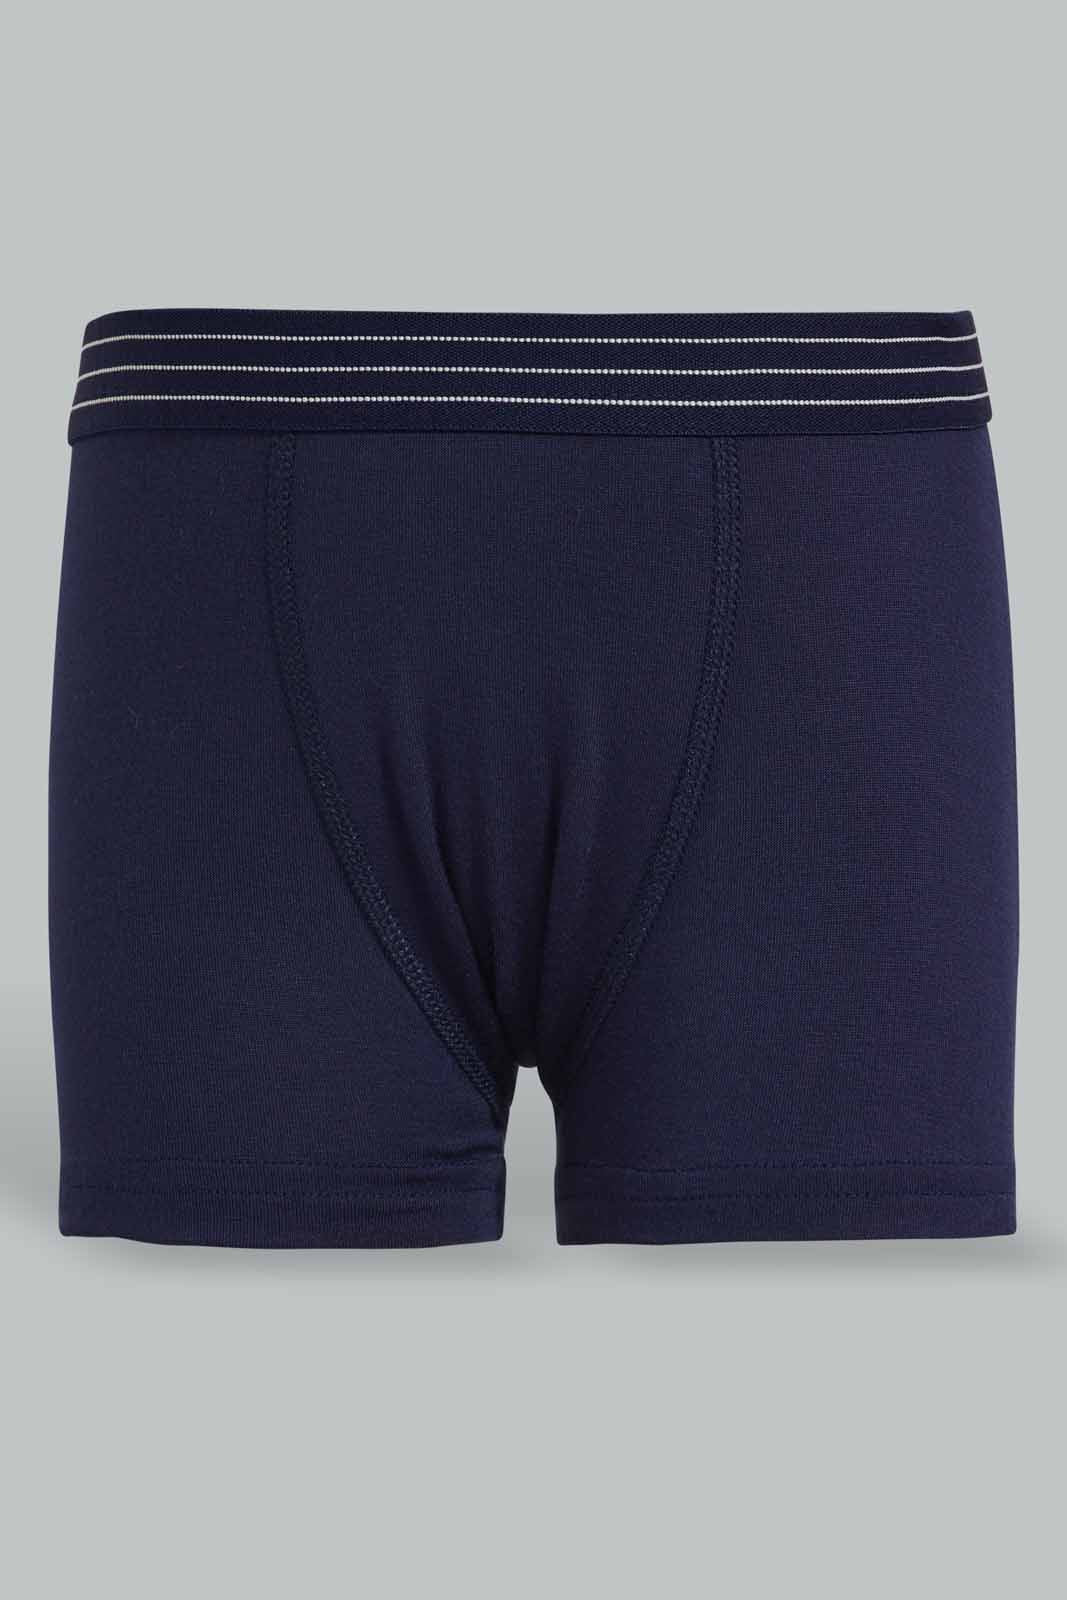 Boy'S Underwear - Buy Underwear For Boys Online In UAE | REDTAG ...